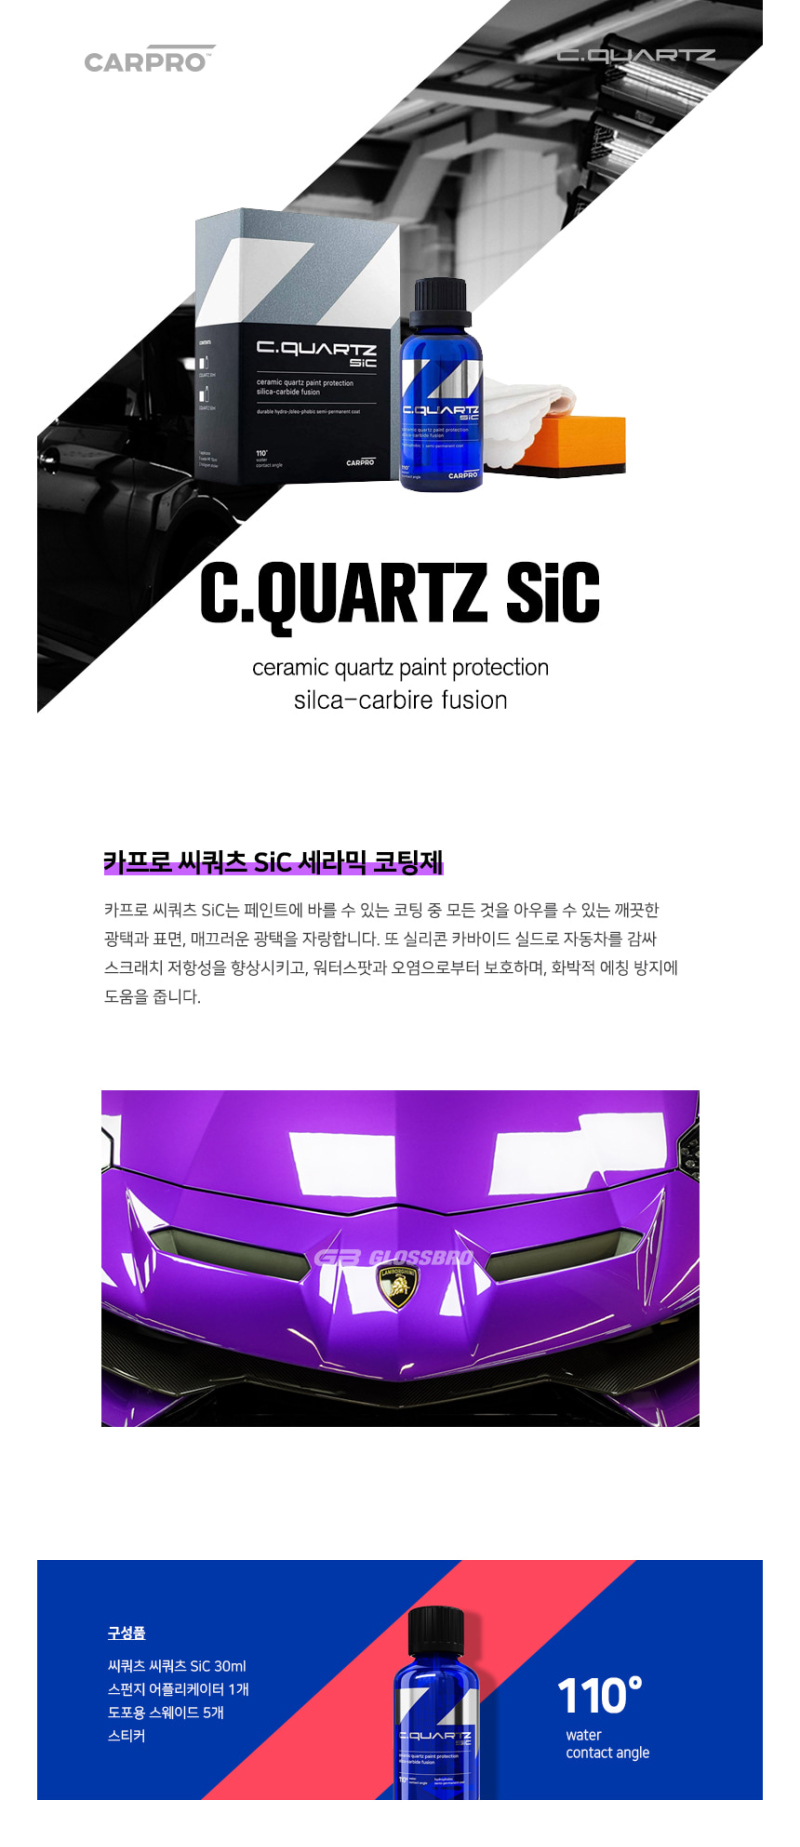 How To Apply CarPro Cquartz SIC Ceramic Coating